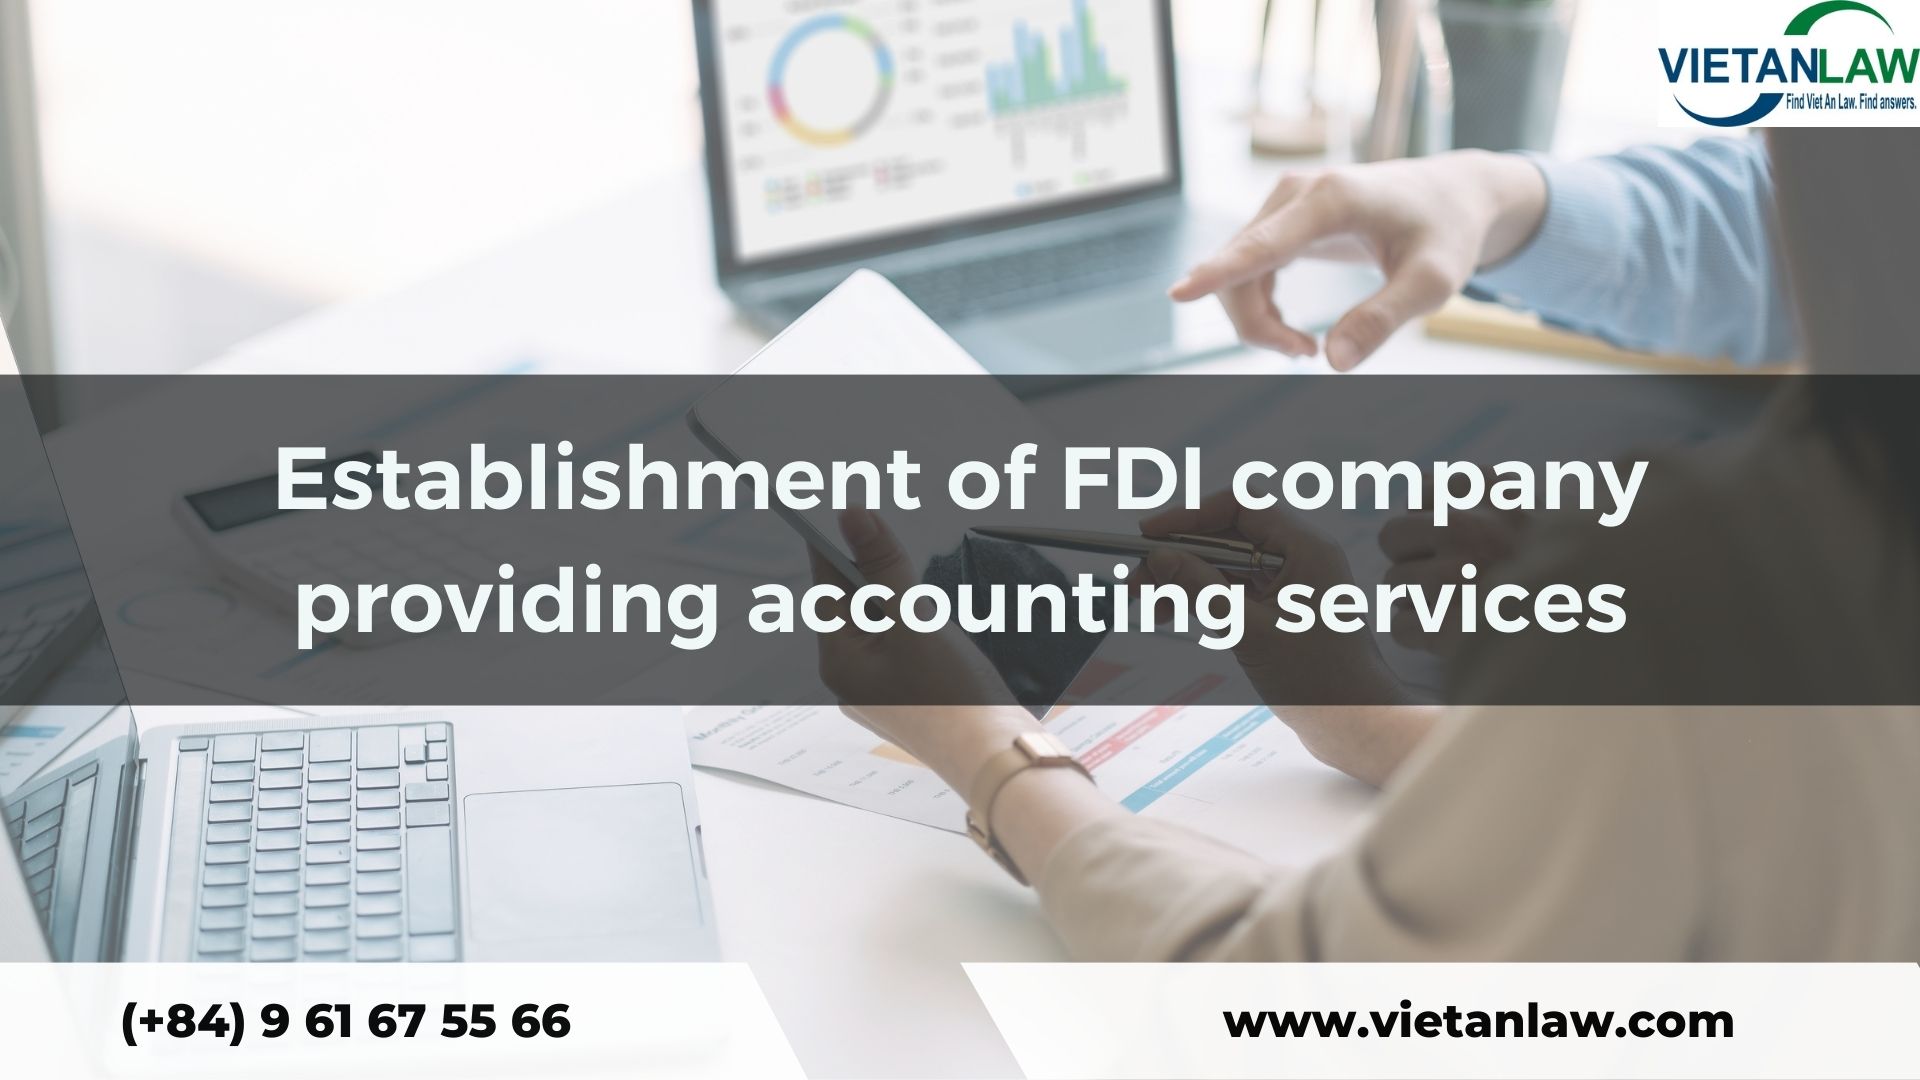 Establish FDI company providing accounting services in Vietnam